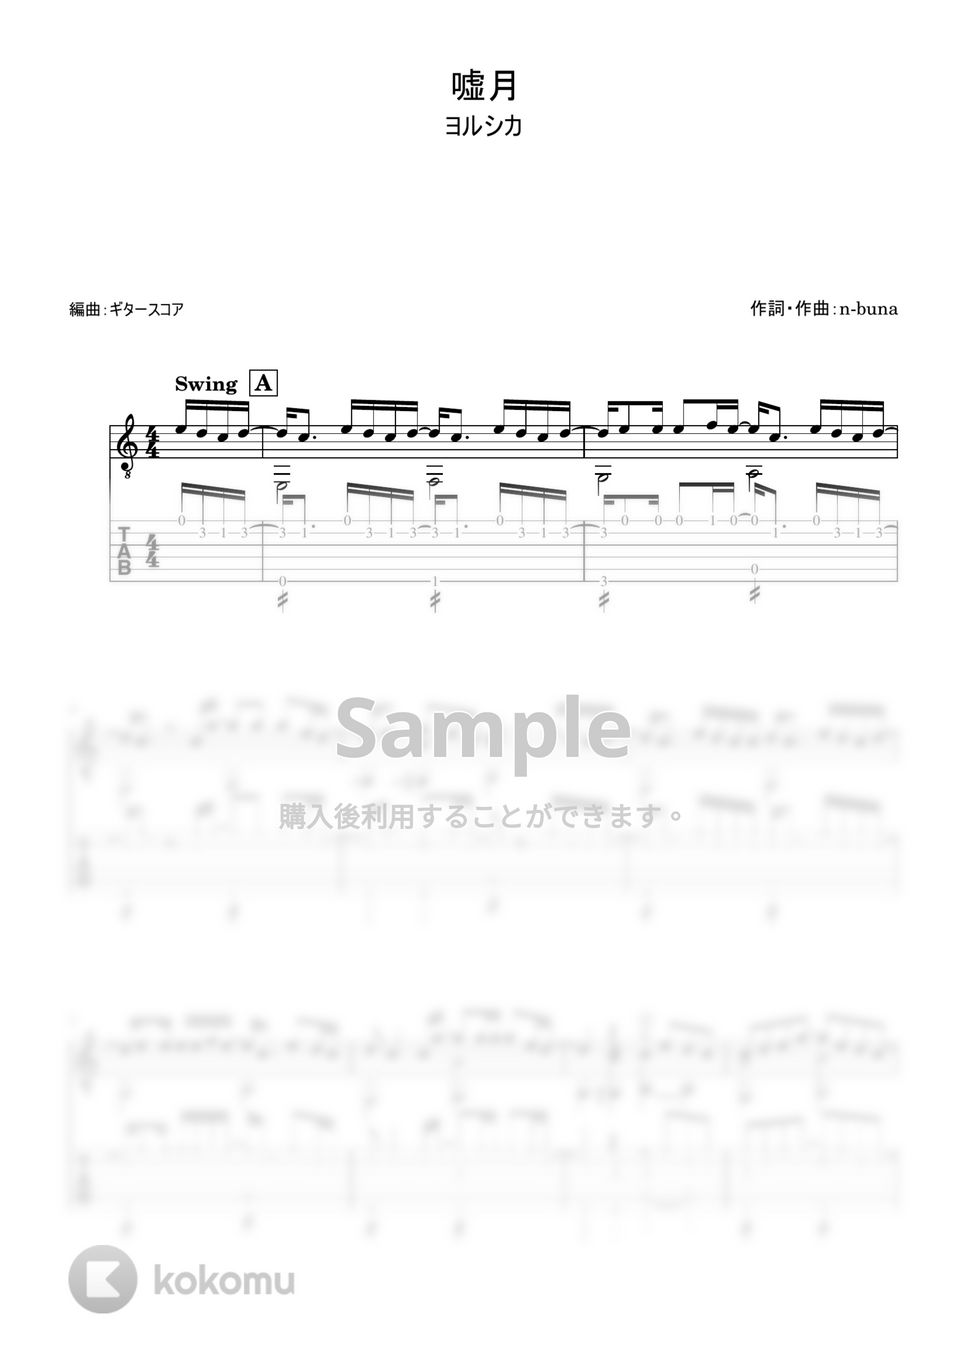 ヨルシカ - 嘘月 (ギター・ソロ用) by ギタースコア